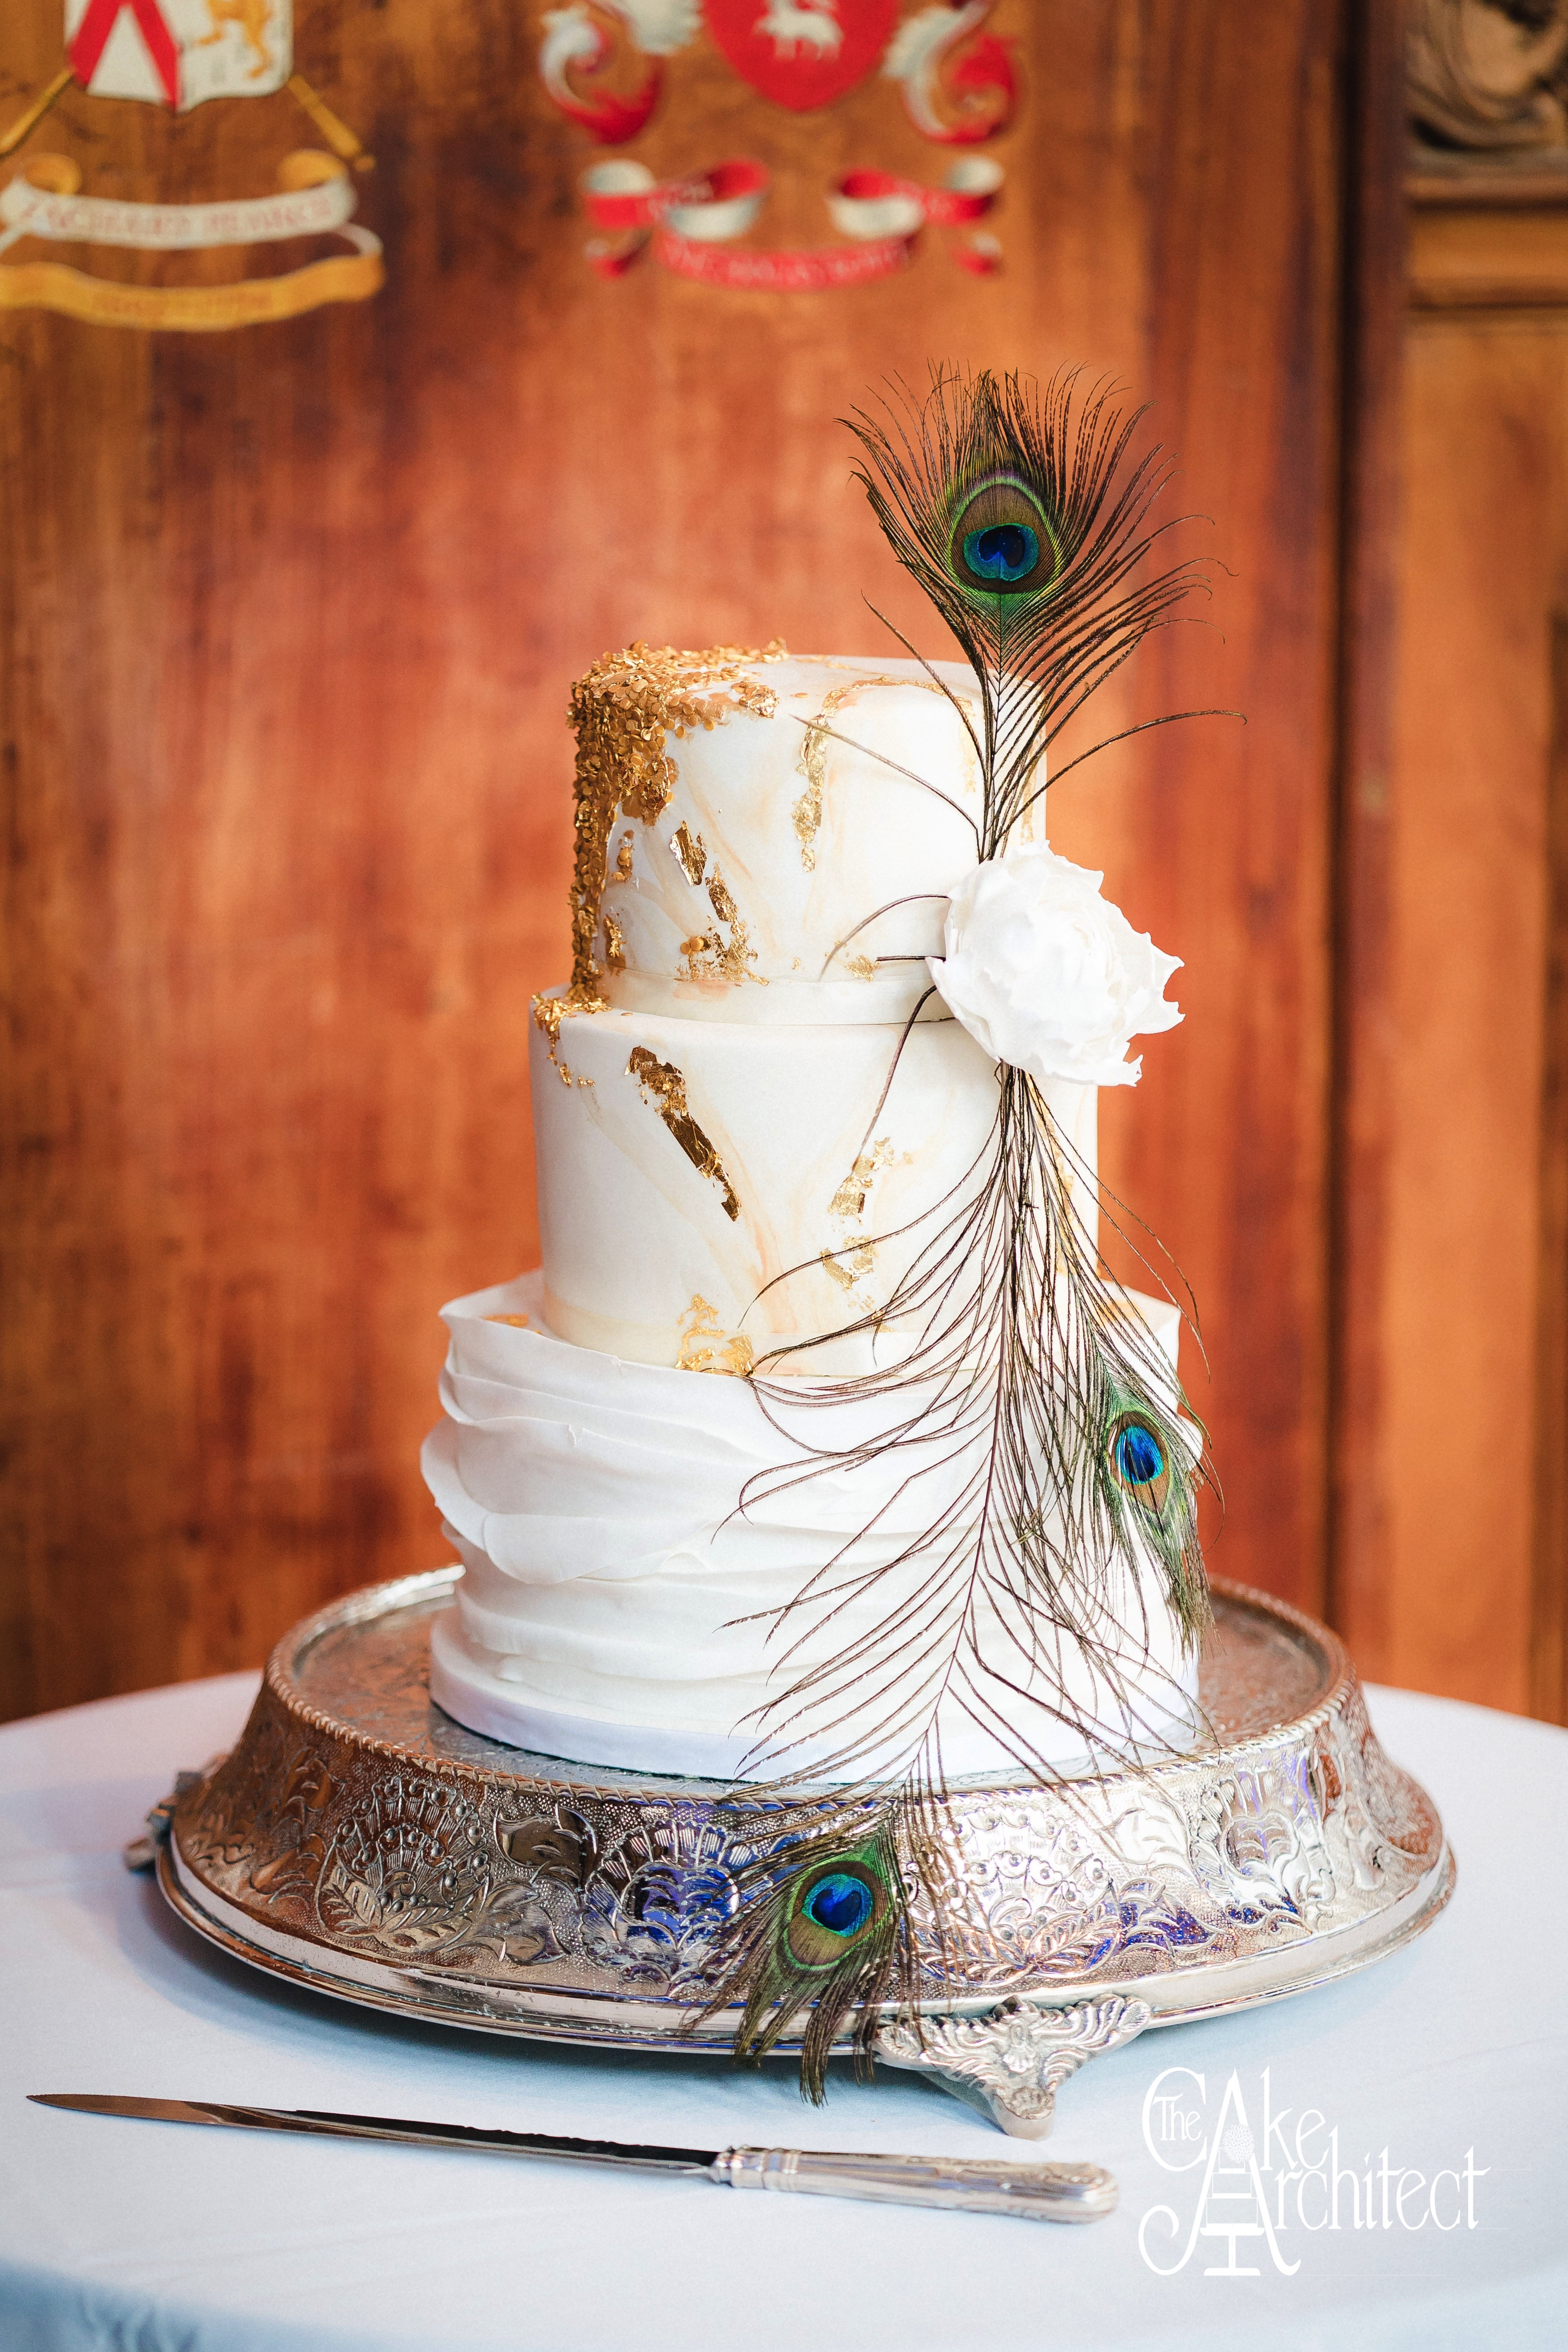 Luxury Wedding Cake, The Cake Architect London Westminster